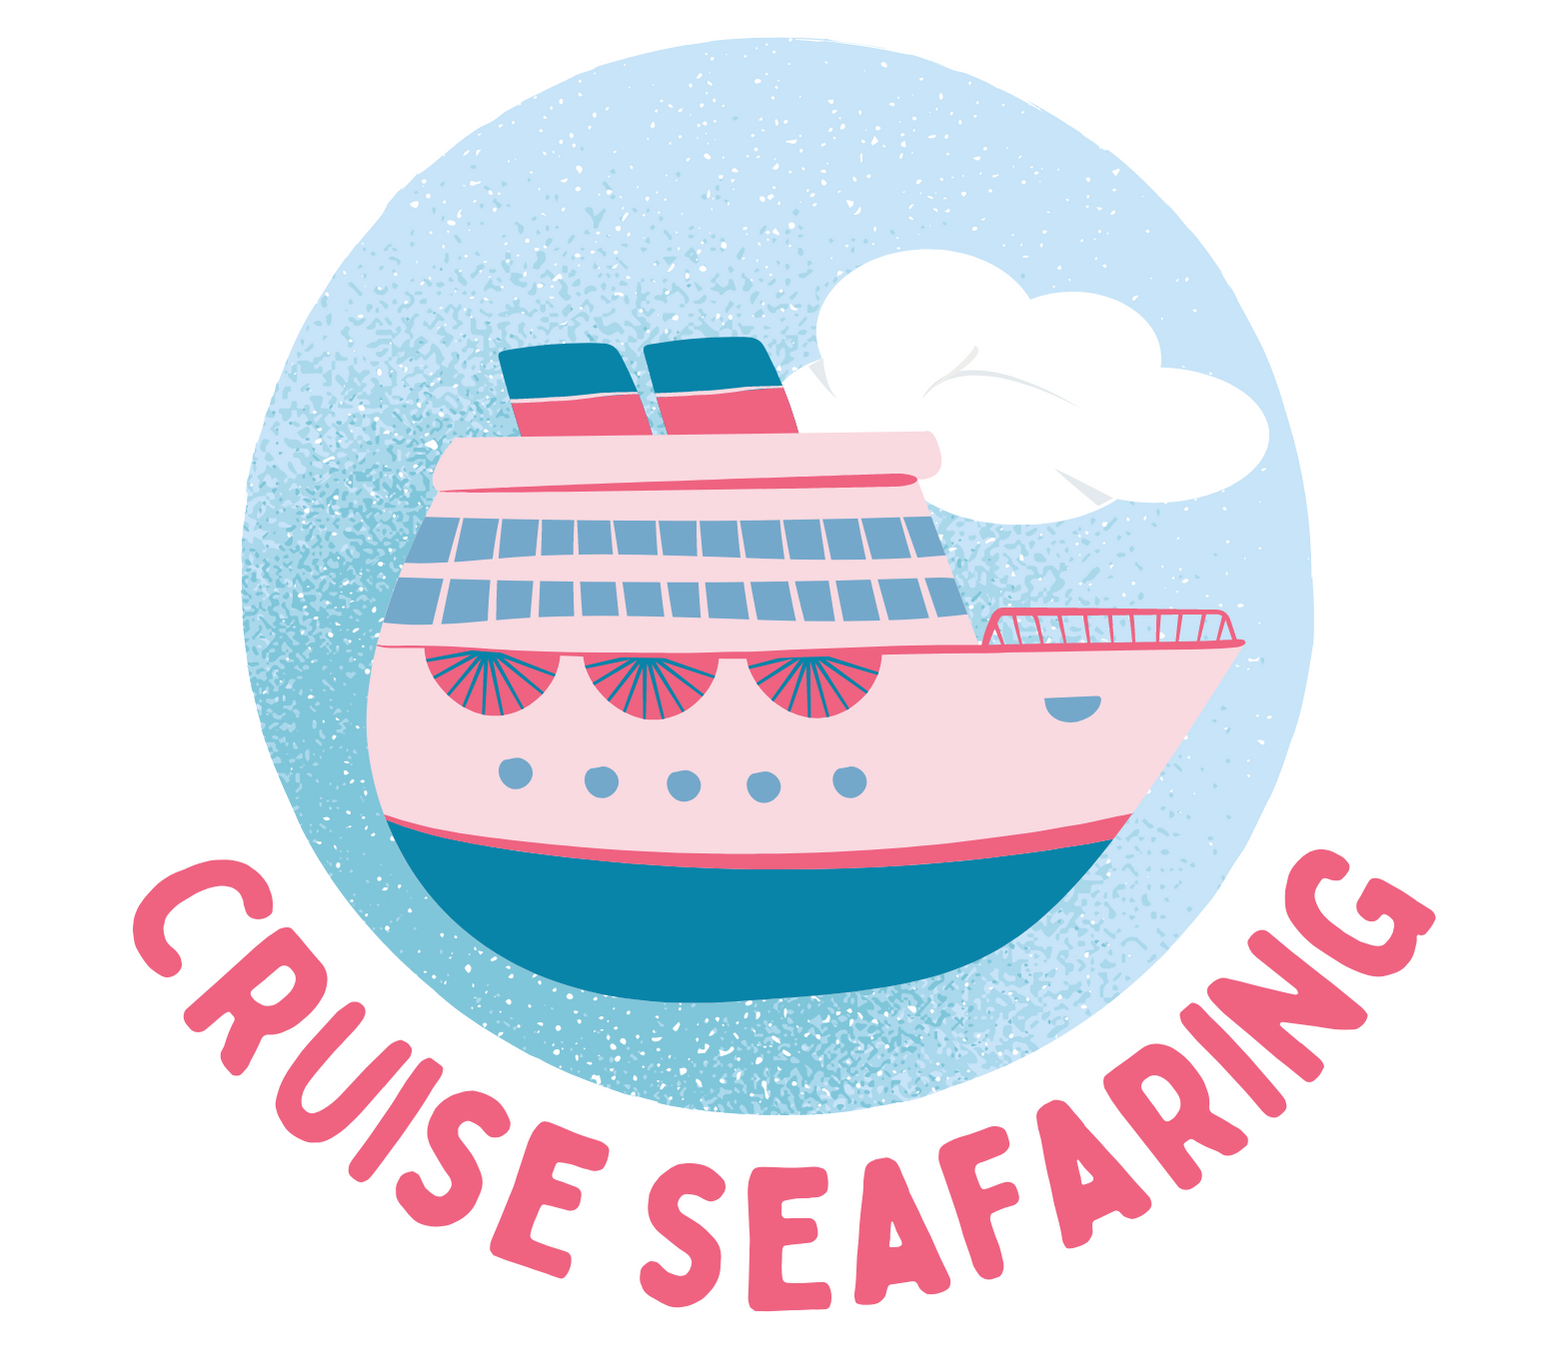 Cruise Seafaring